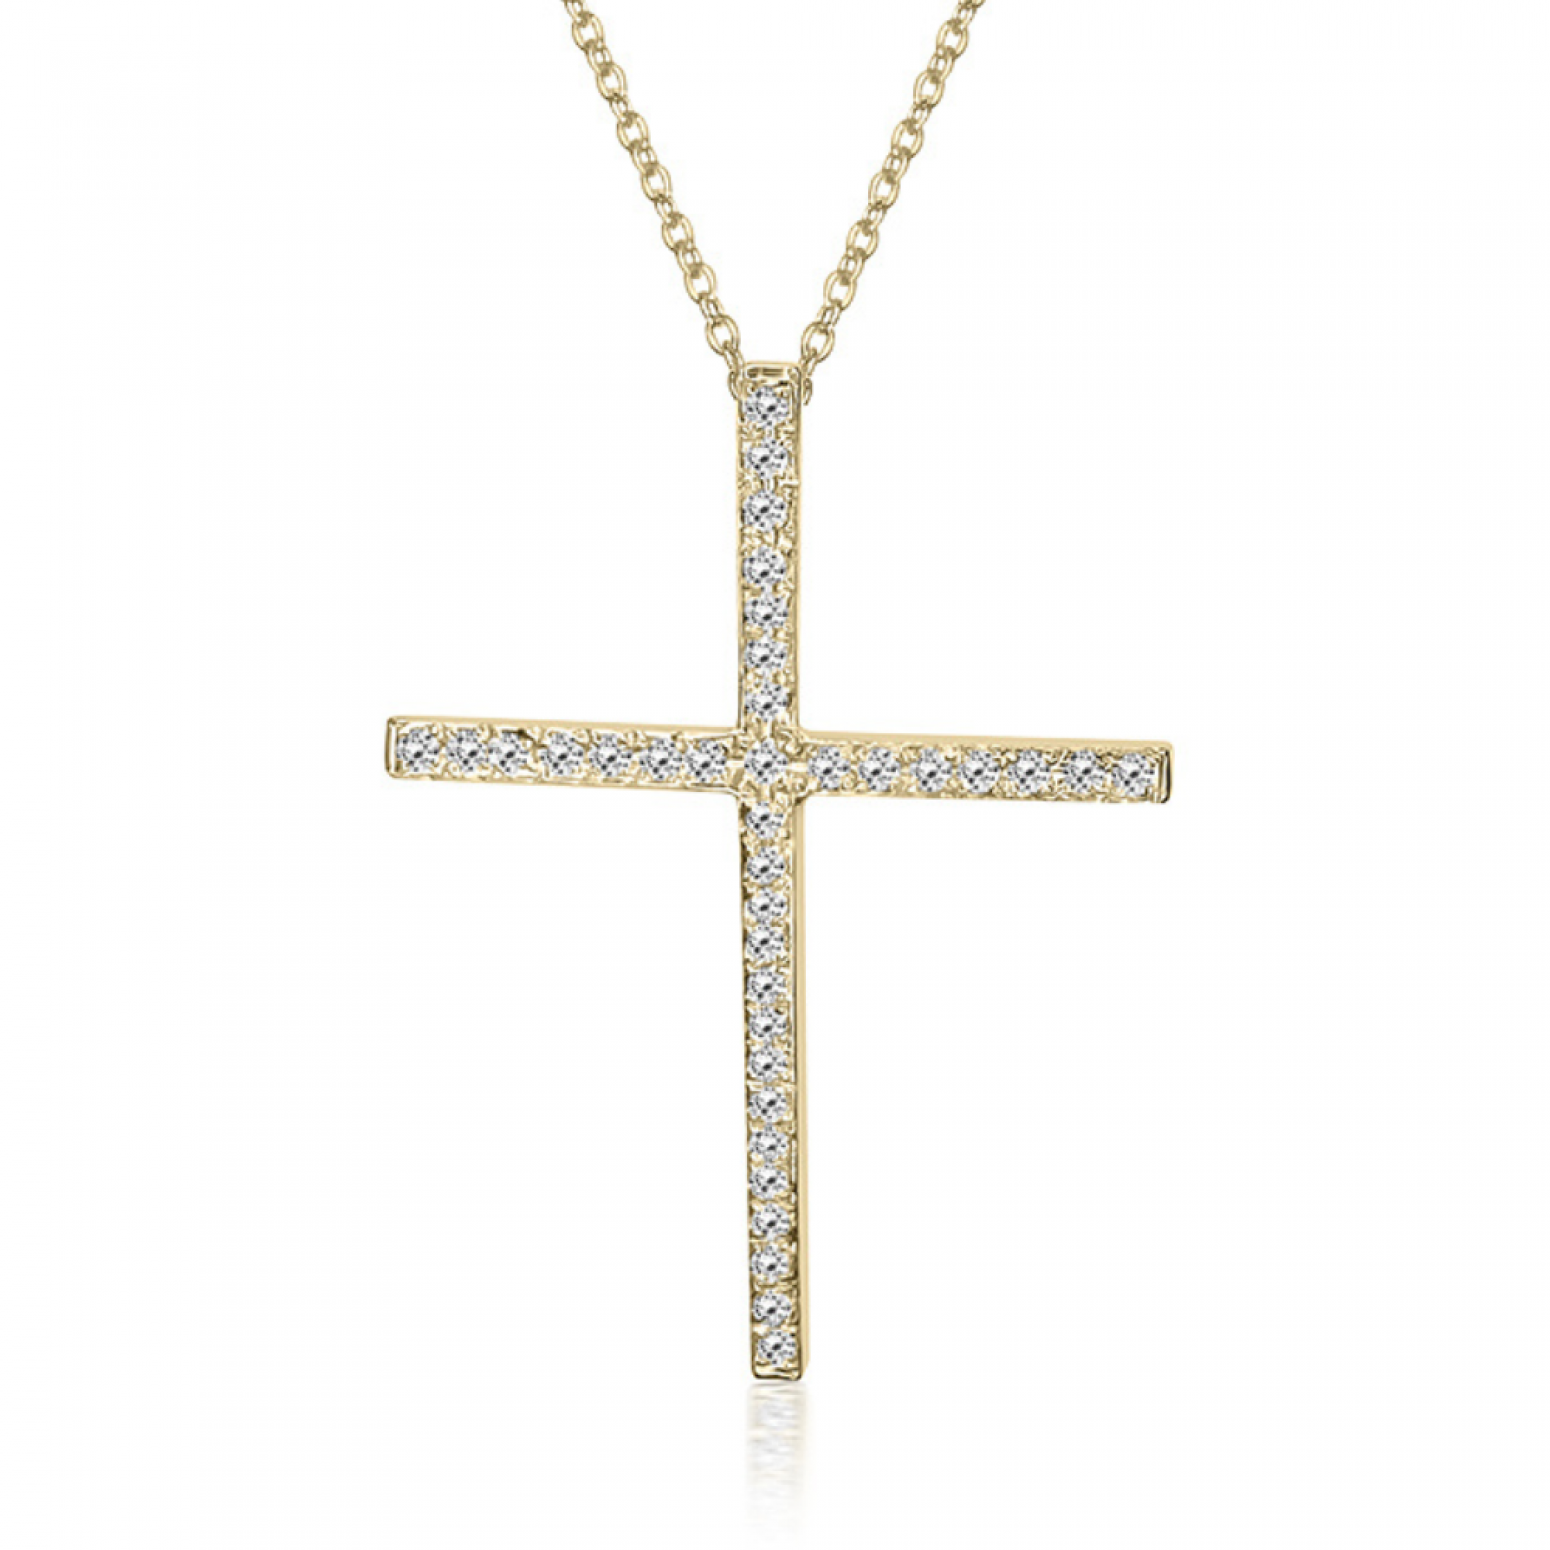 Βαπτιστικός σταυρός με αλυσίδα Κ18 χρυσό με διαμάντια 0.11ct, VS2, H ko5881 ΣΤΑΥΡΟΙ Κοσμηματα - chrilia.gr